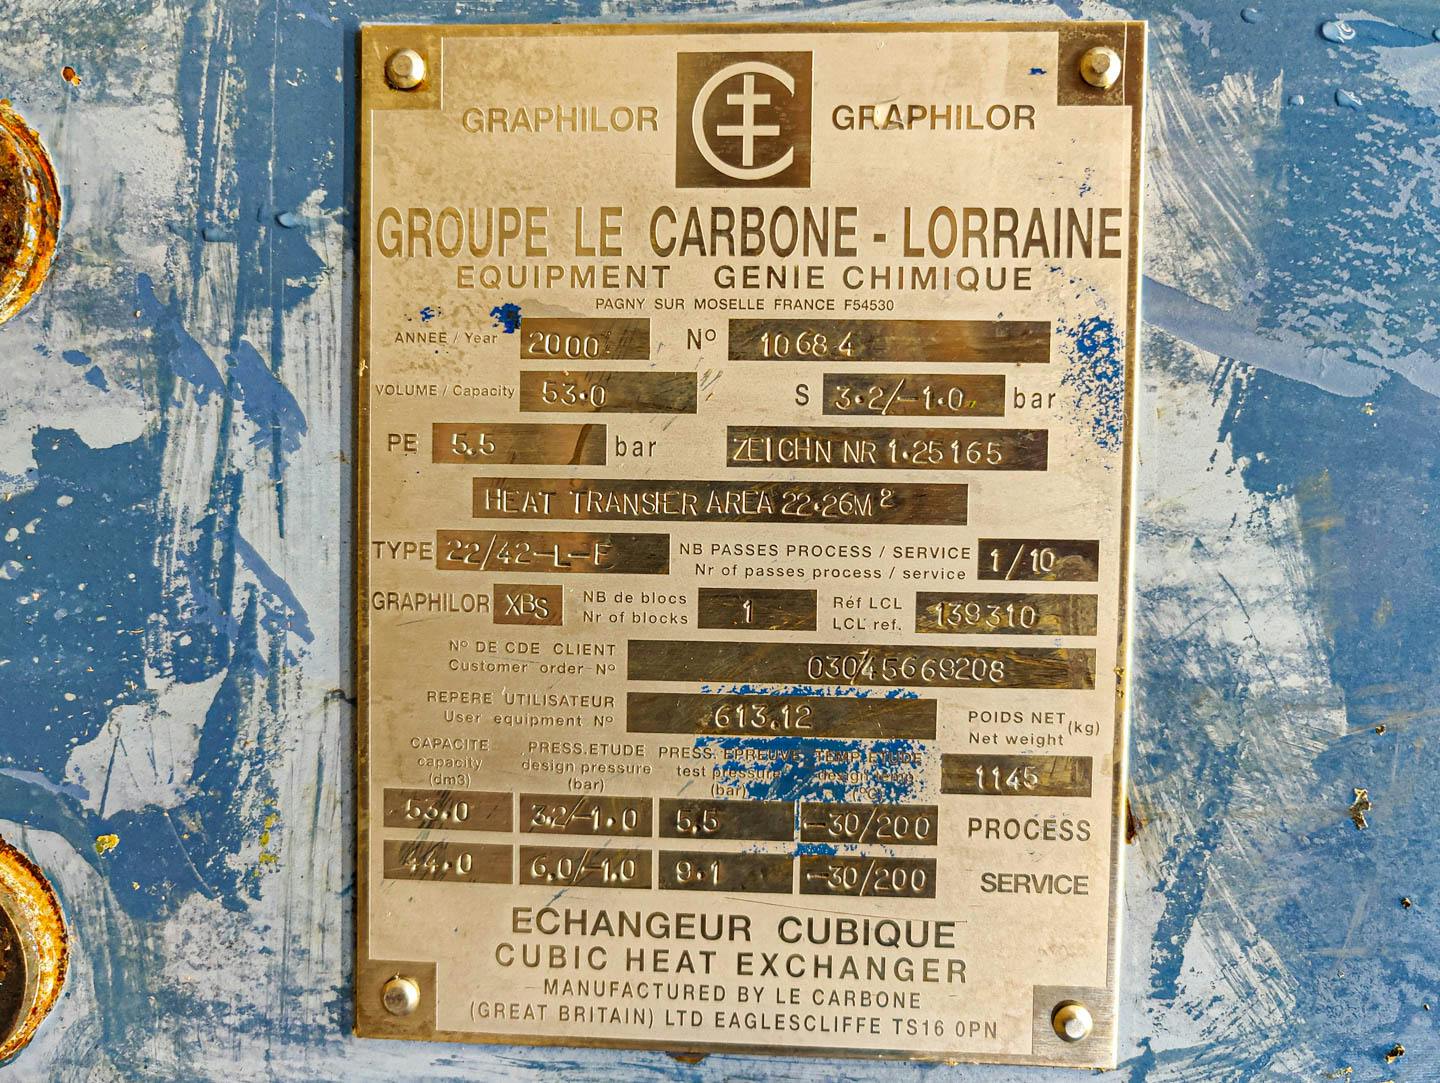 Le Carbone-Lorraine NK22/42-L-F - Intercambiador de calor de carcasa y tubos - image 8